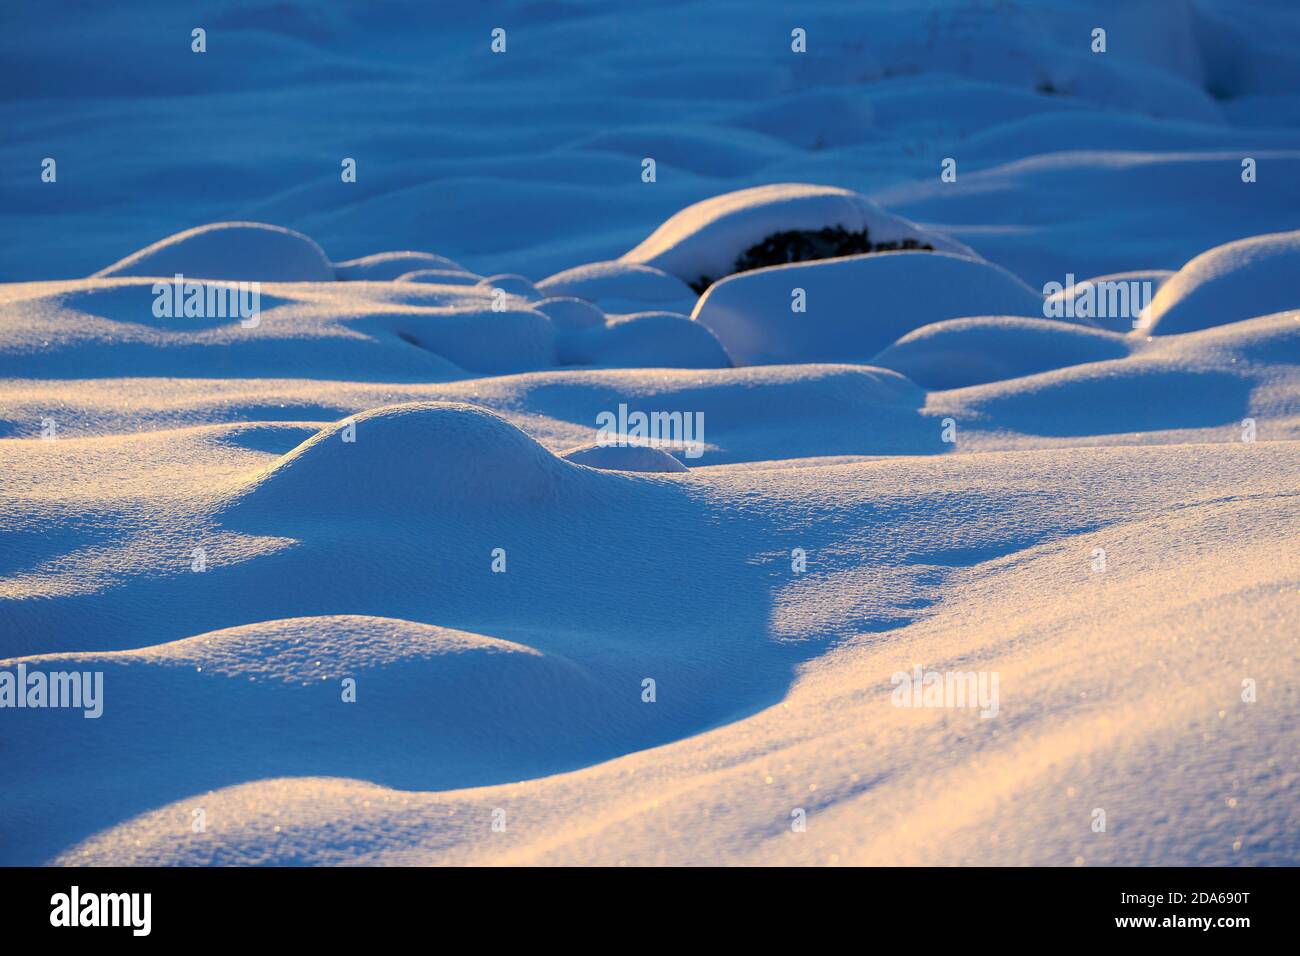 Primo piano dettaglio della neve in polvere e dei suoi modelli con piccole colline. I fiocchi di neve brillano alla luce del sole. Ilulissat, Baia di Disko, Groenlandia. Foto Stock